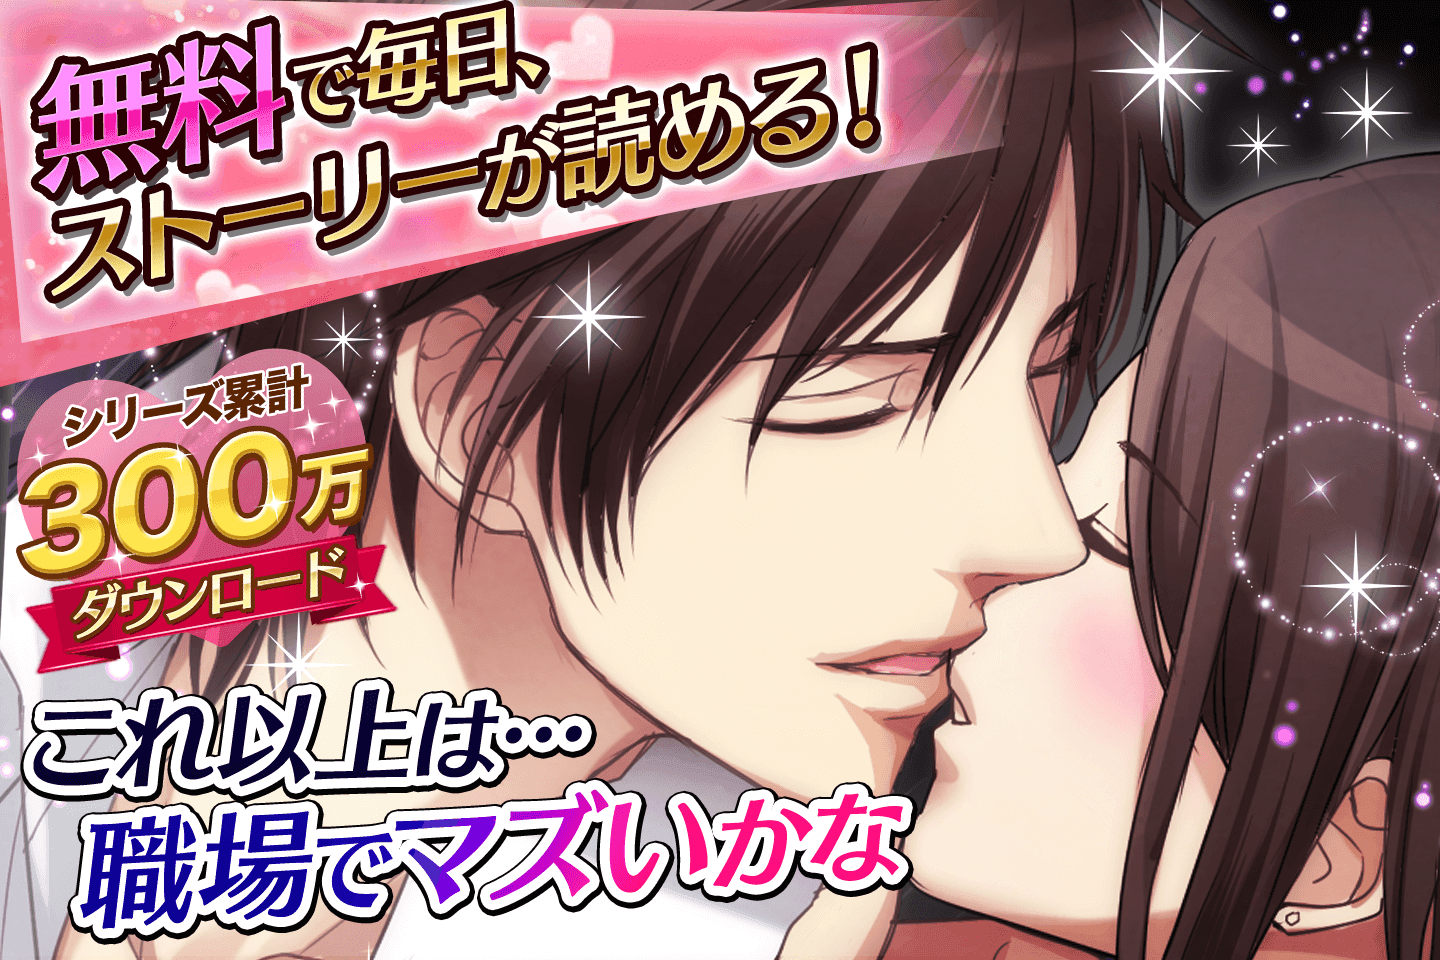 Screenshot 1 of Cinta yang diberikan oleh detektif Permainan dating untuk wanita adalah percuma! Permainan Otome yang popular 1.2.1